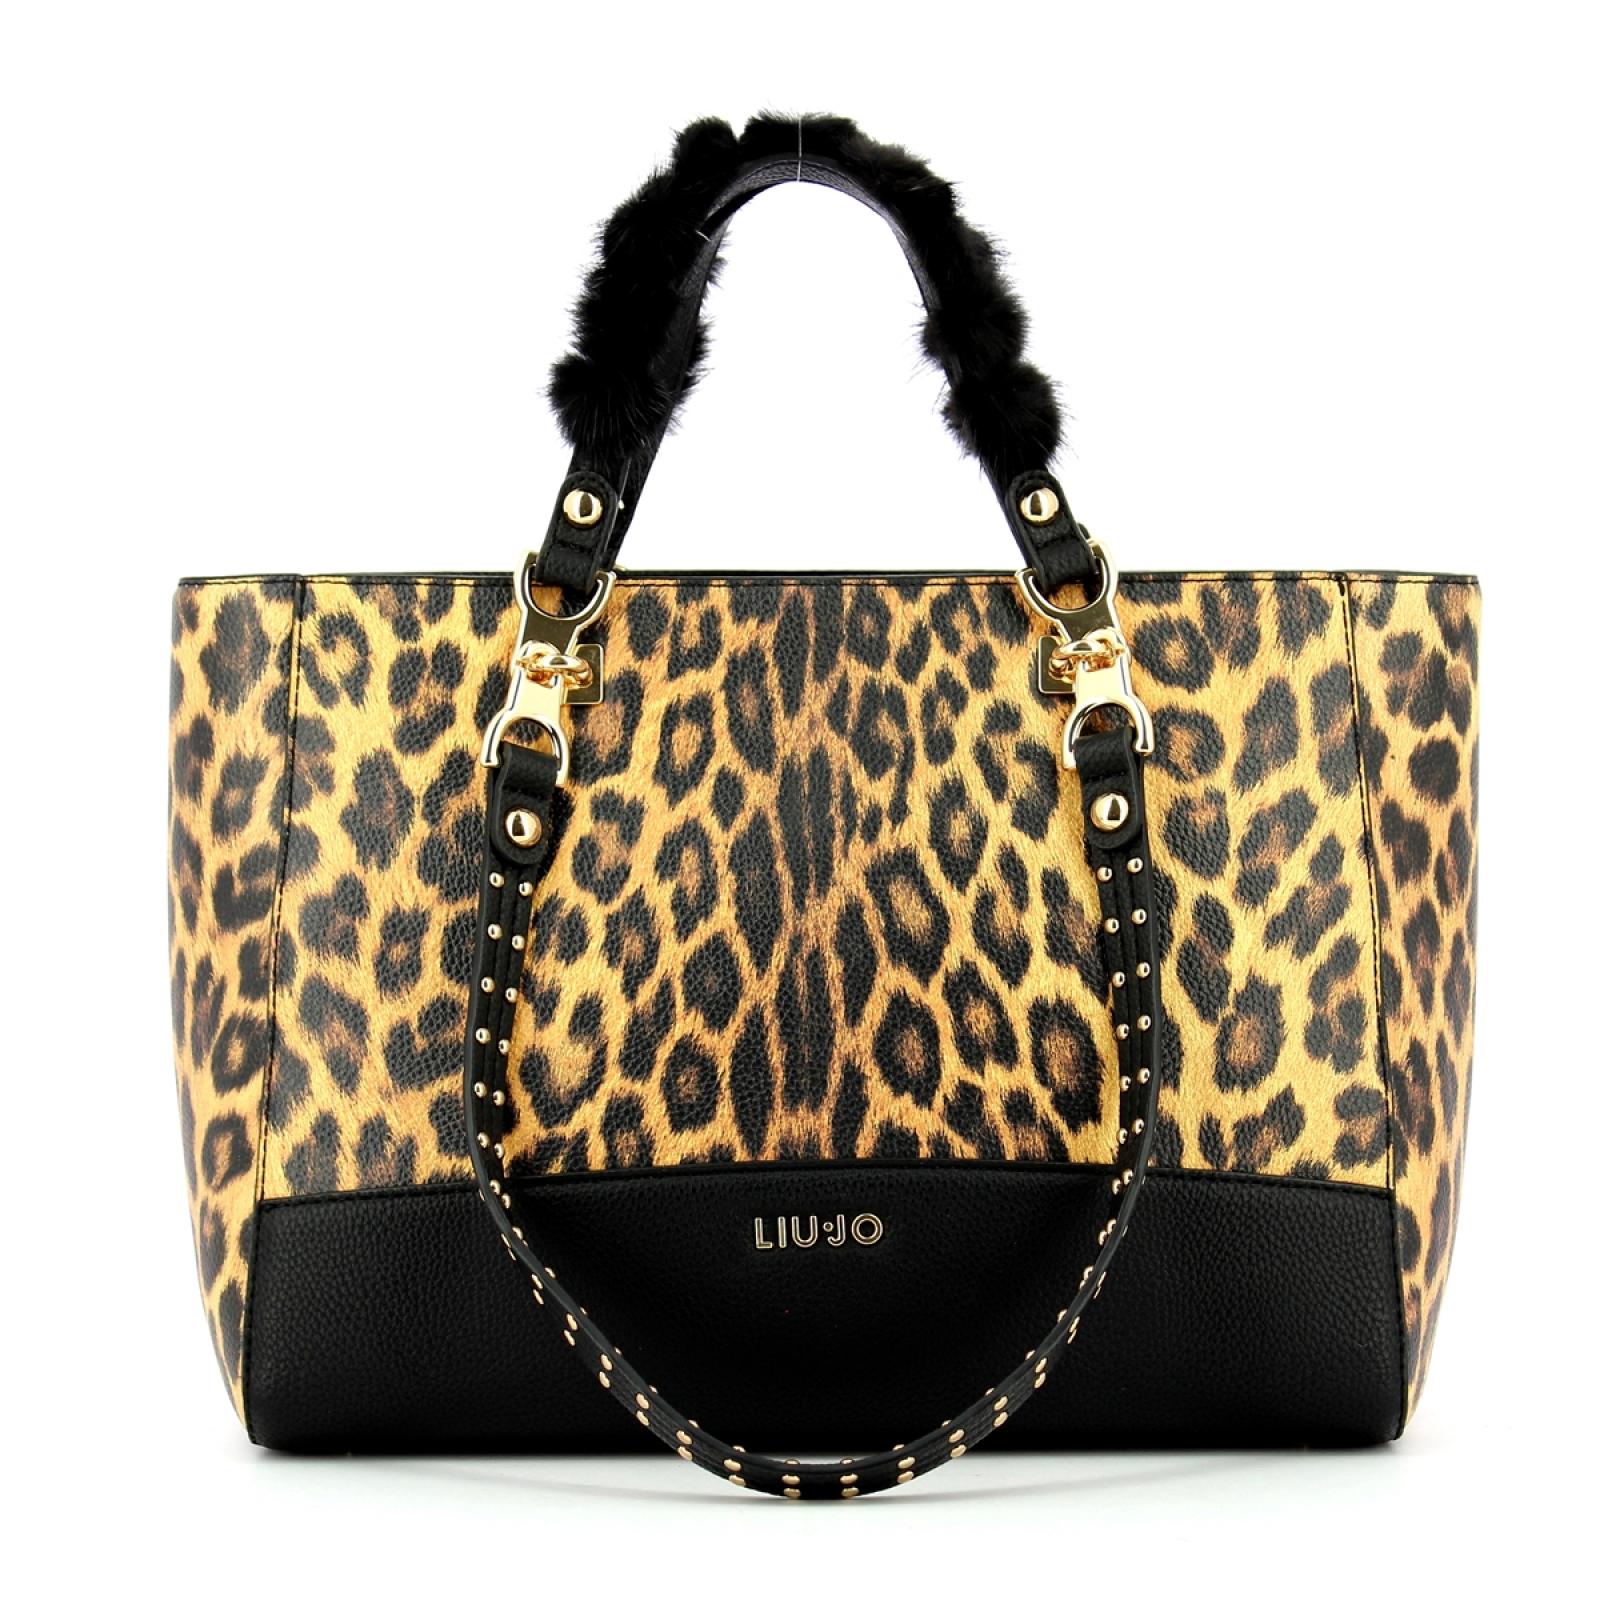 Liu Jo Shopping Bag Maculata - 1